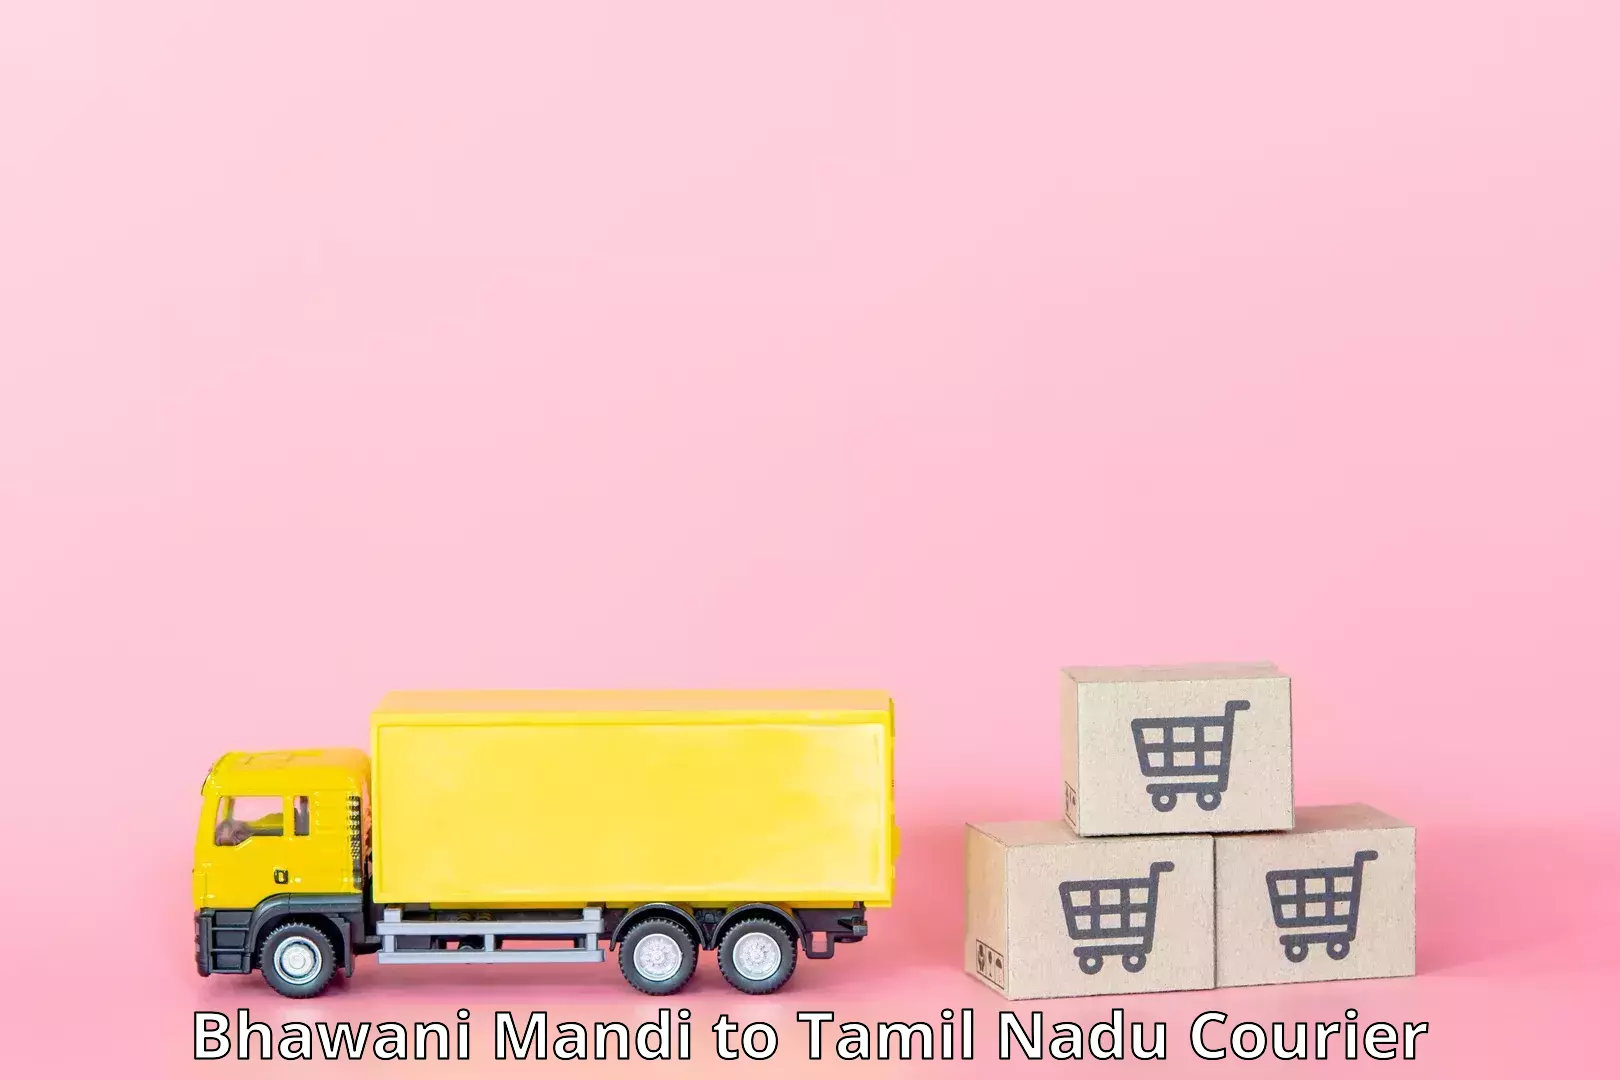 Express logistics providers Bhawani Mandi to Kangeyam